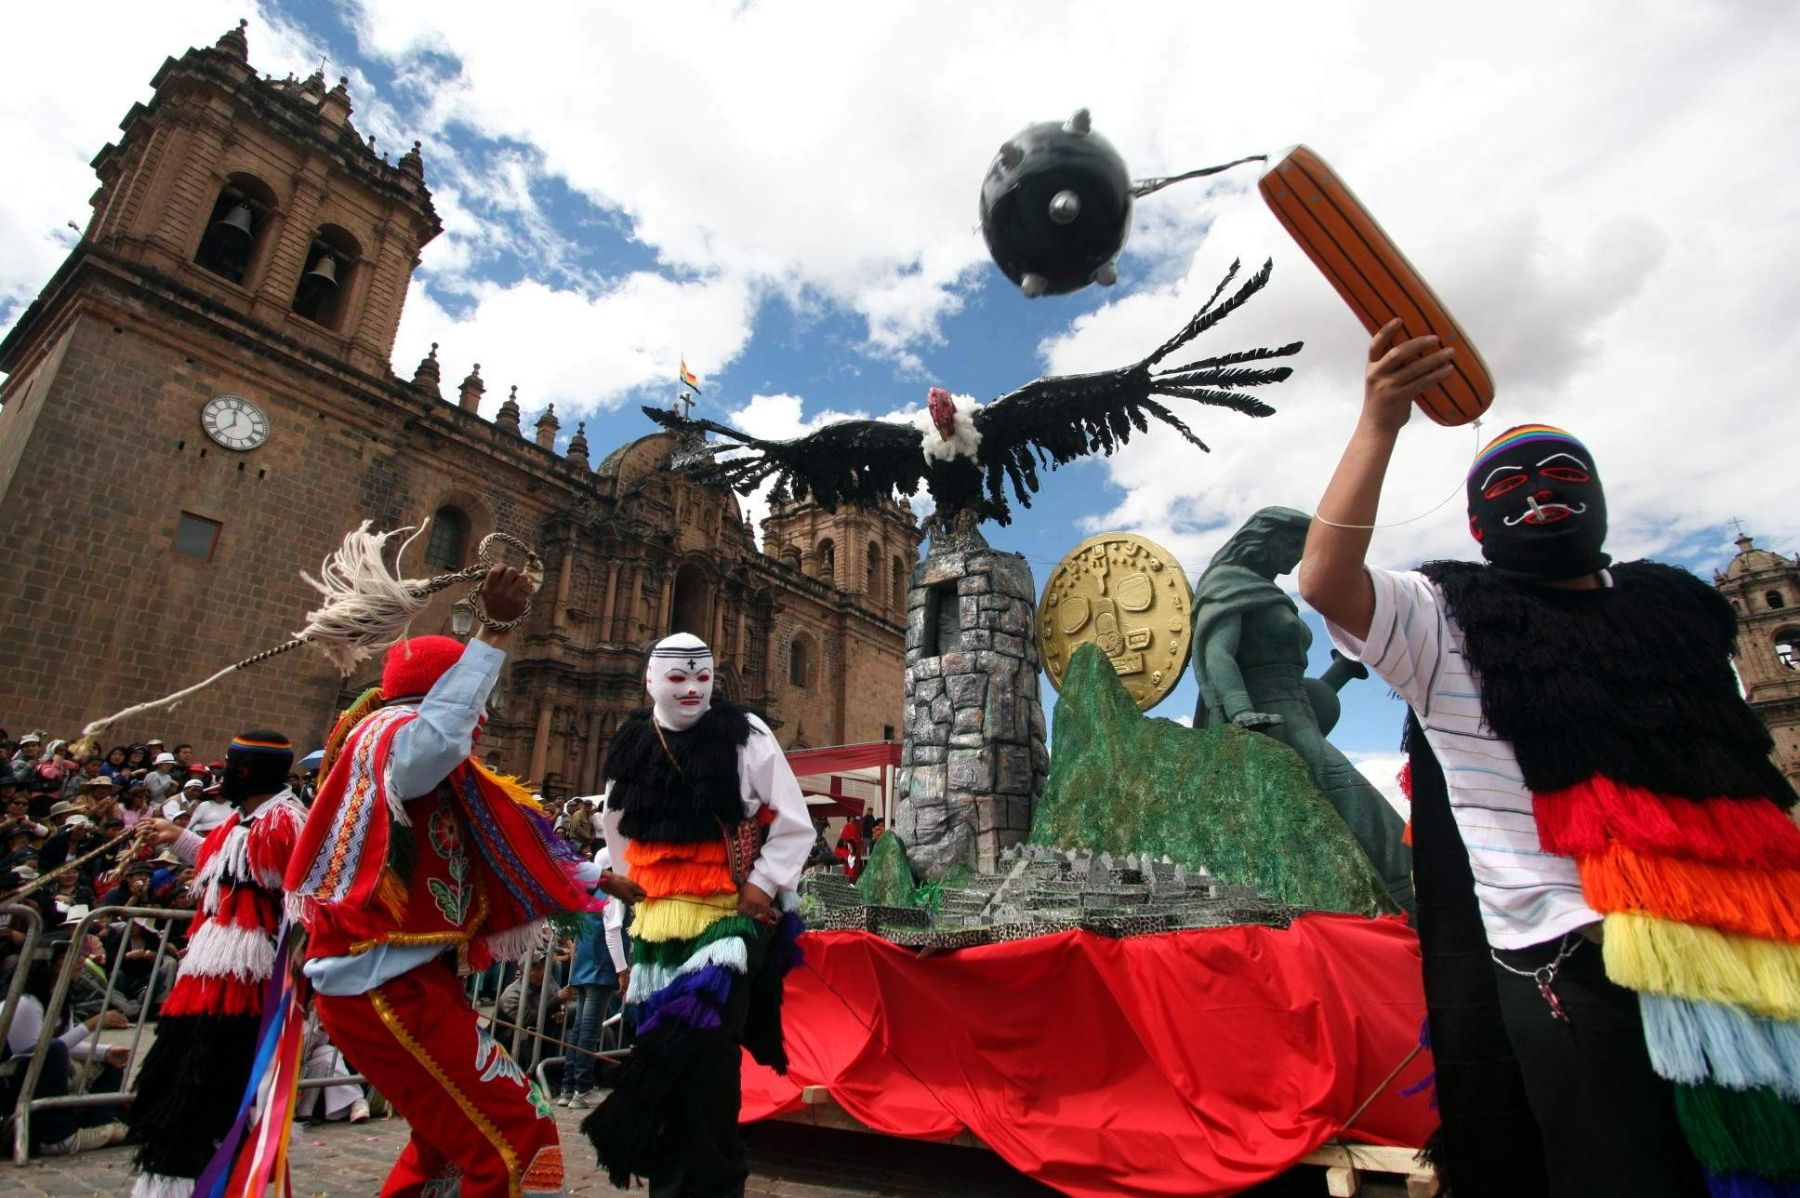 La ciudad del Cusco vivió hoy con gran algarabía el pasacalle de gigantescas alegorías. Foto:ANDINA/Percy Hurtado.